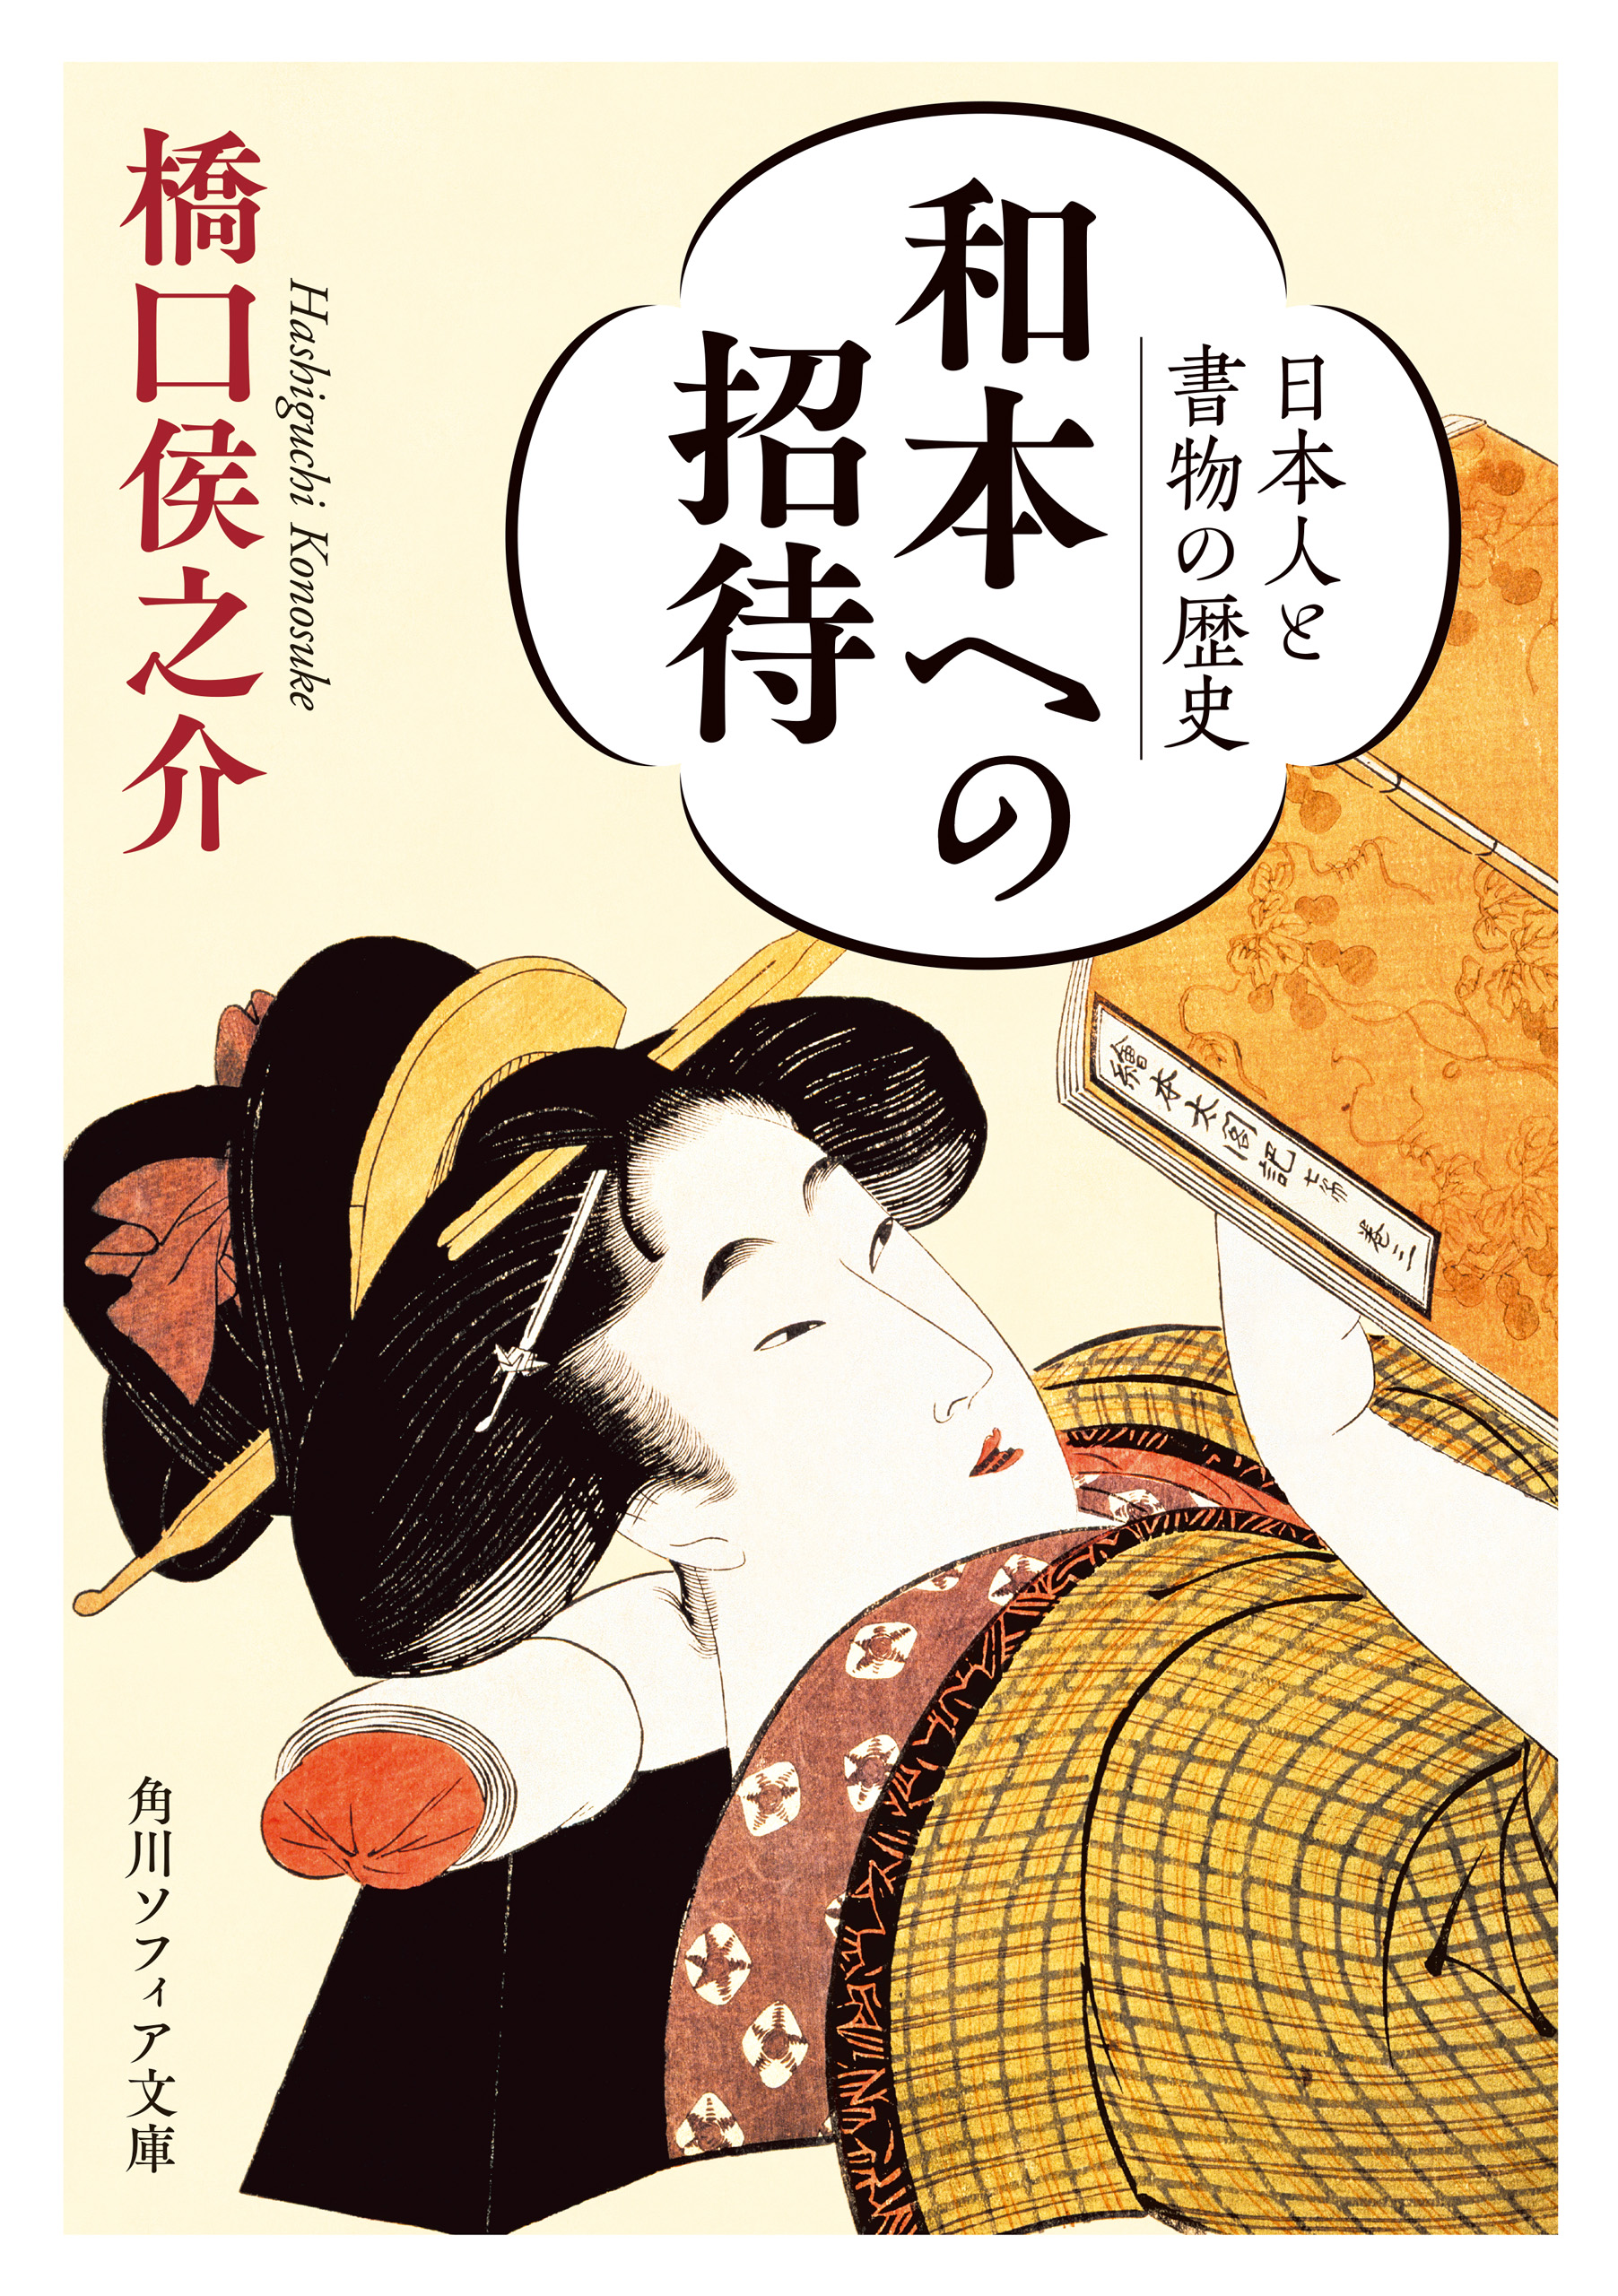 アートジャパネスク 日本の美と文化15 浮世絵と町人 江戸メディア 